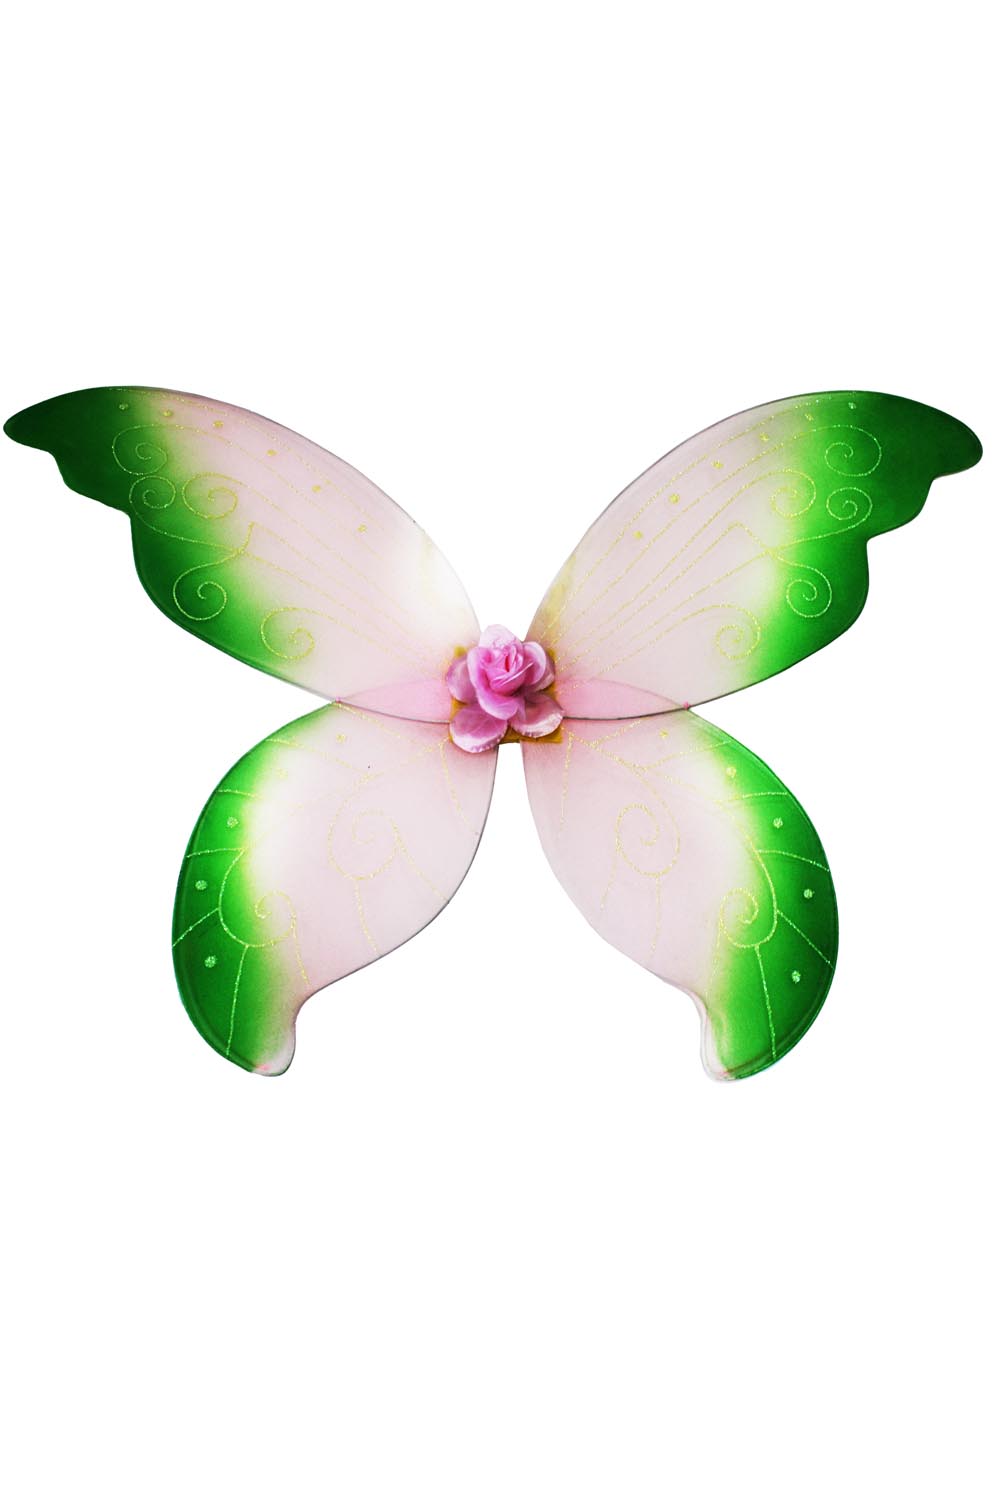 Ali farfalla grandi rosa-verde